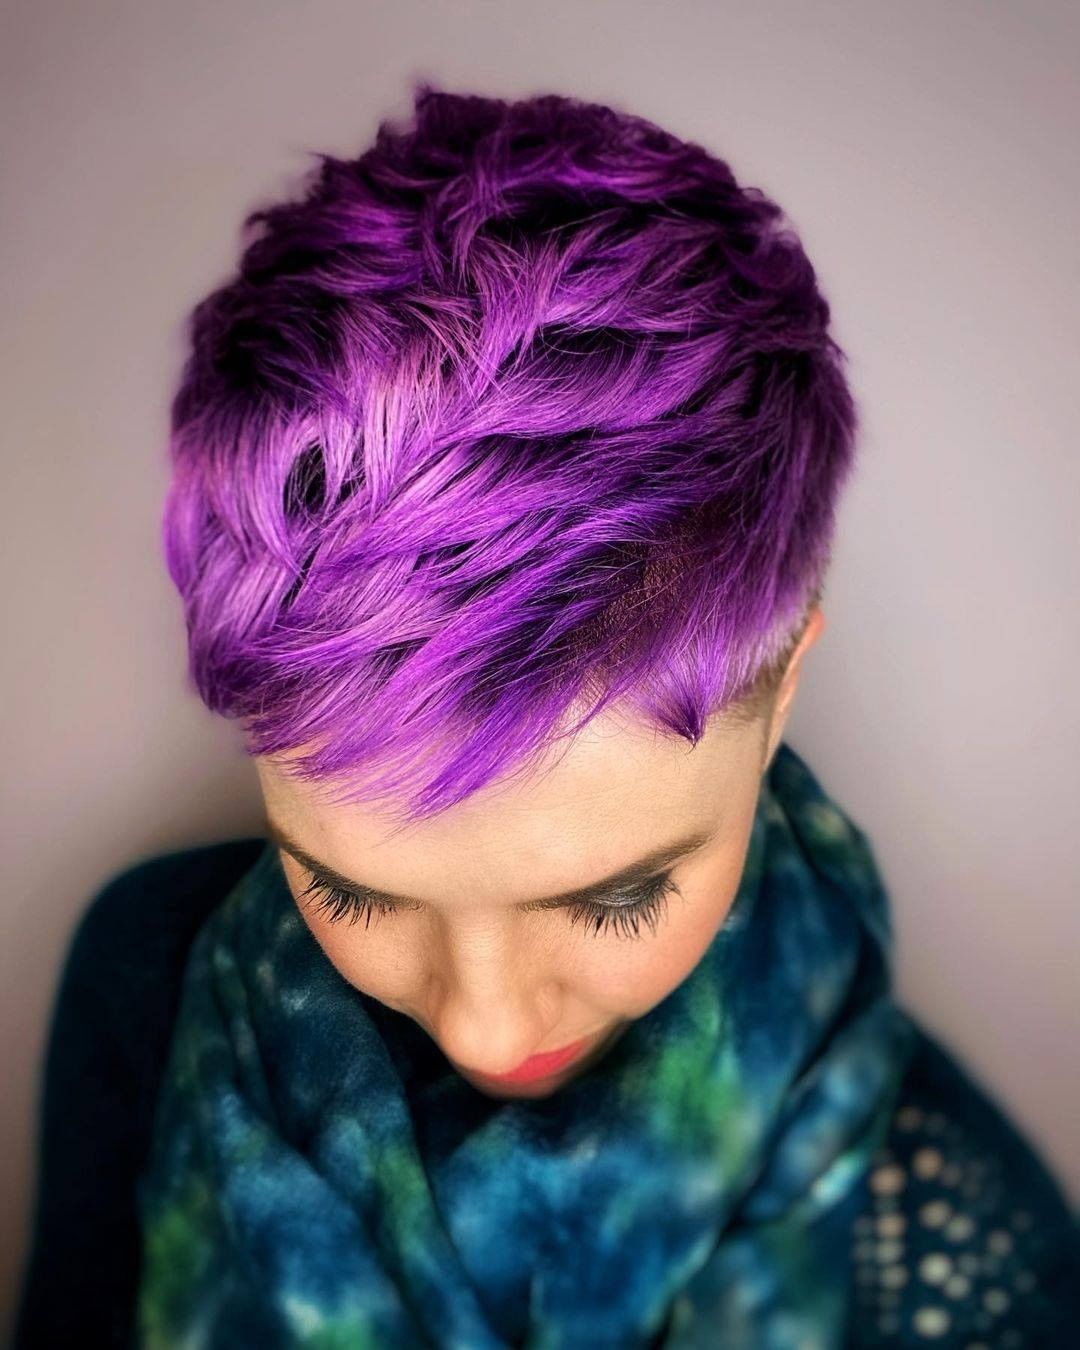 Taglio pixie con colore viola - @sonia_rohrbach